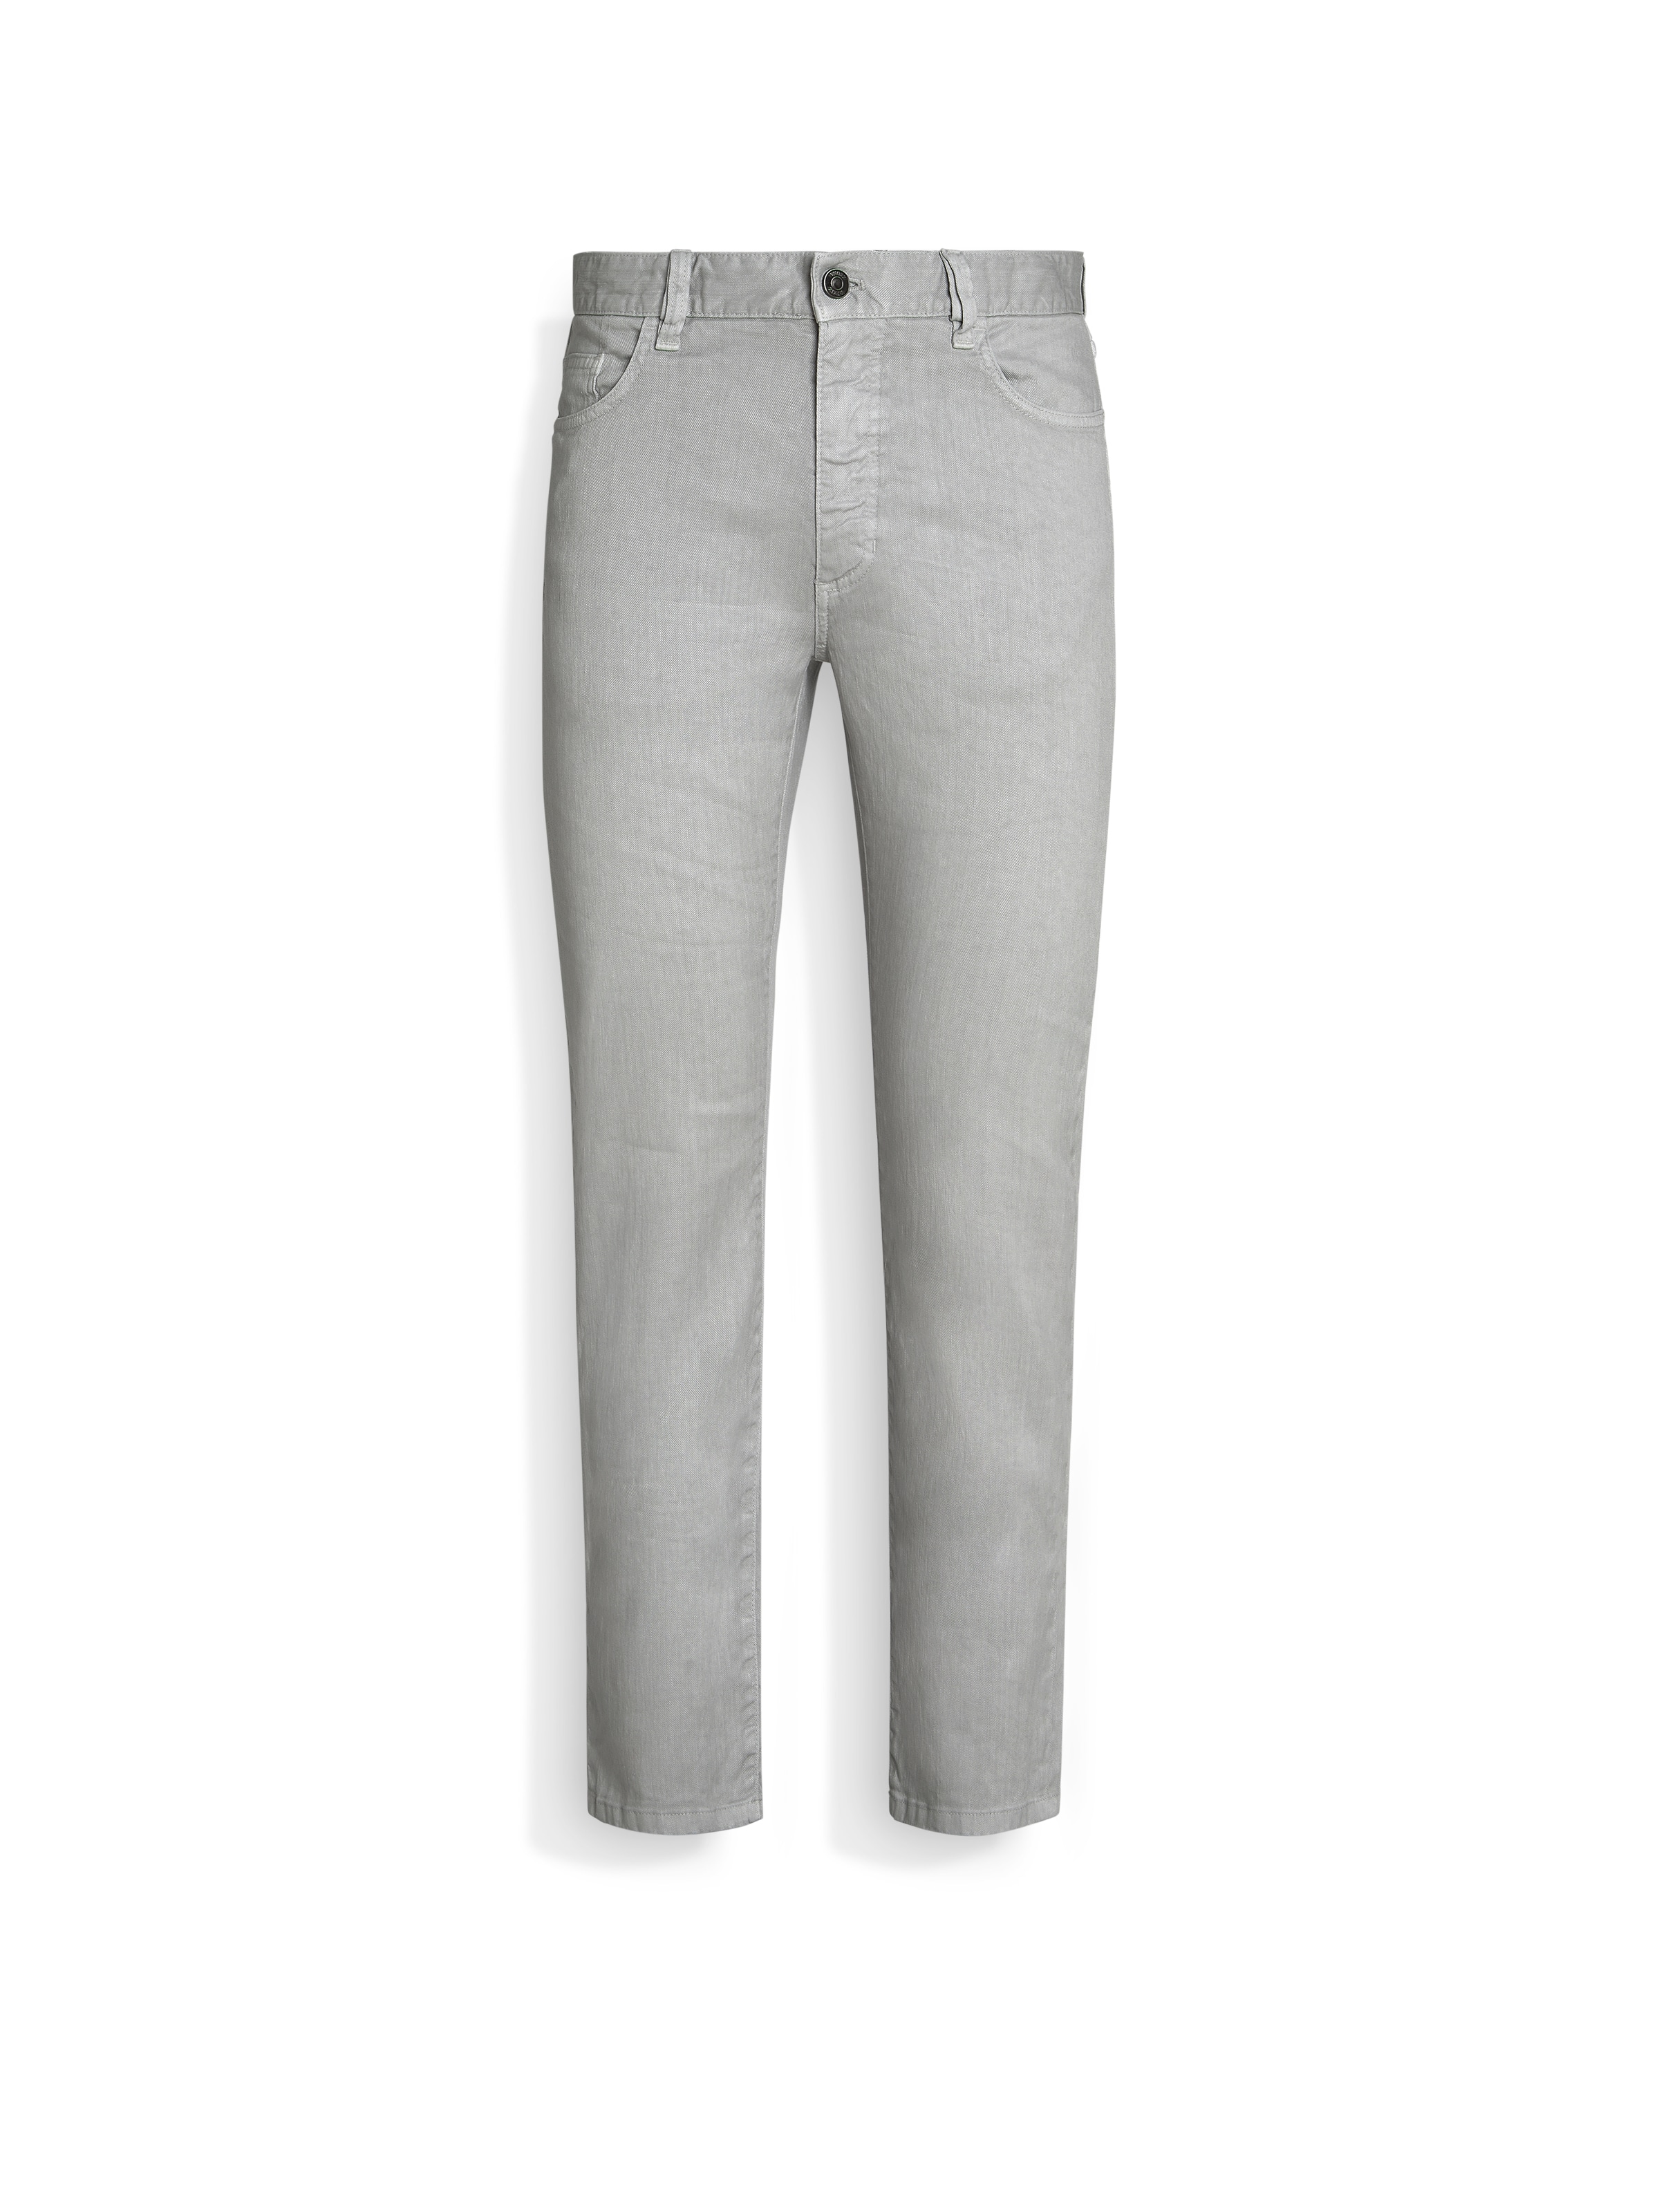 Shop Zegna Light Grey Stretch Linen And Cotton Roccia Jeans